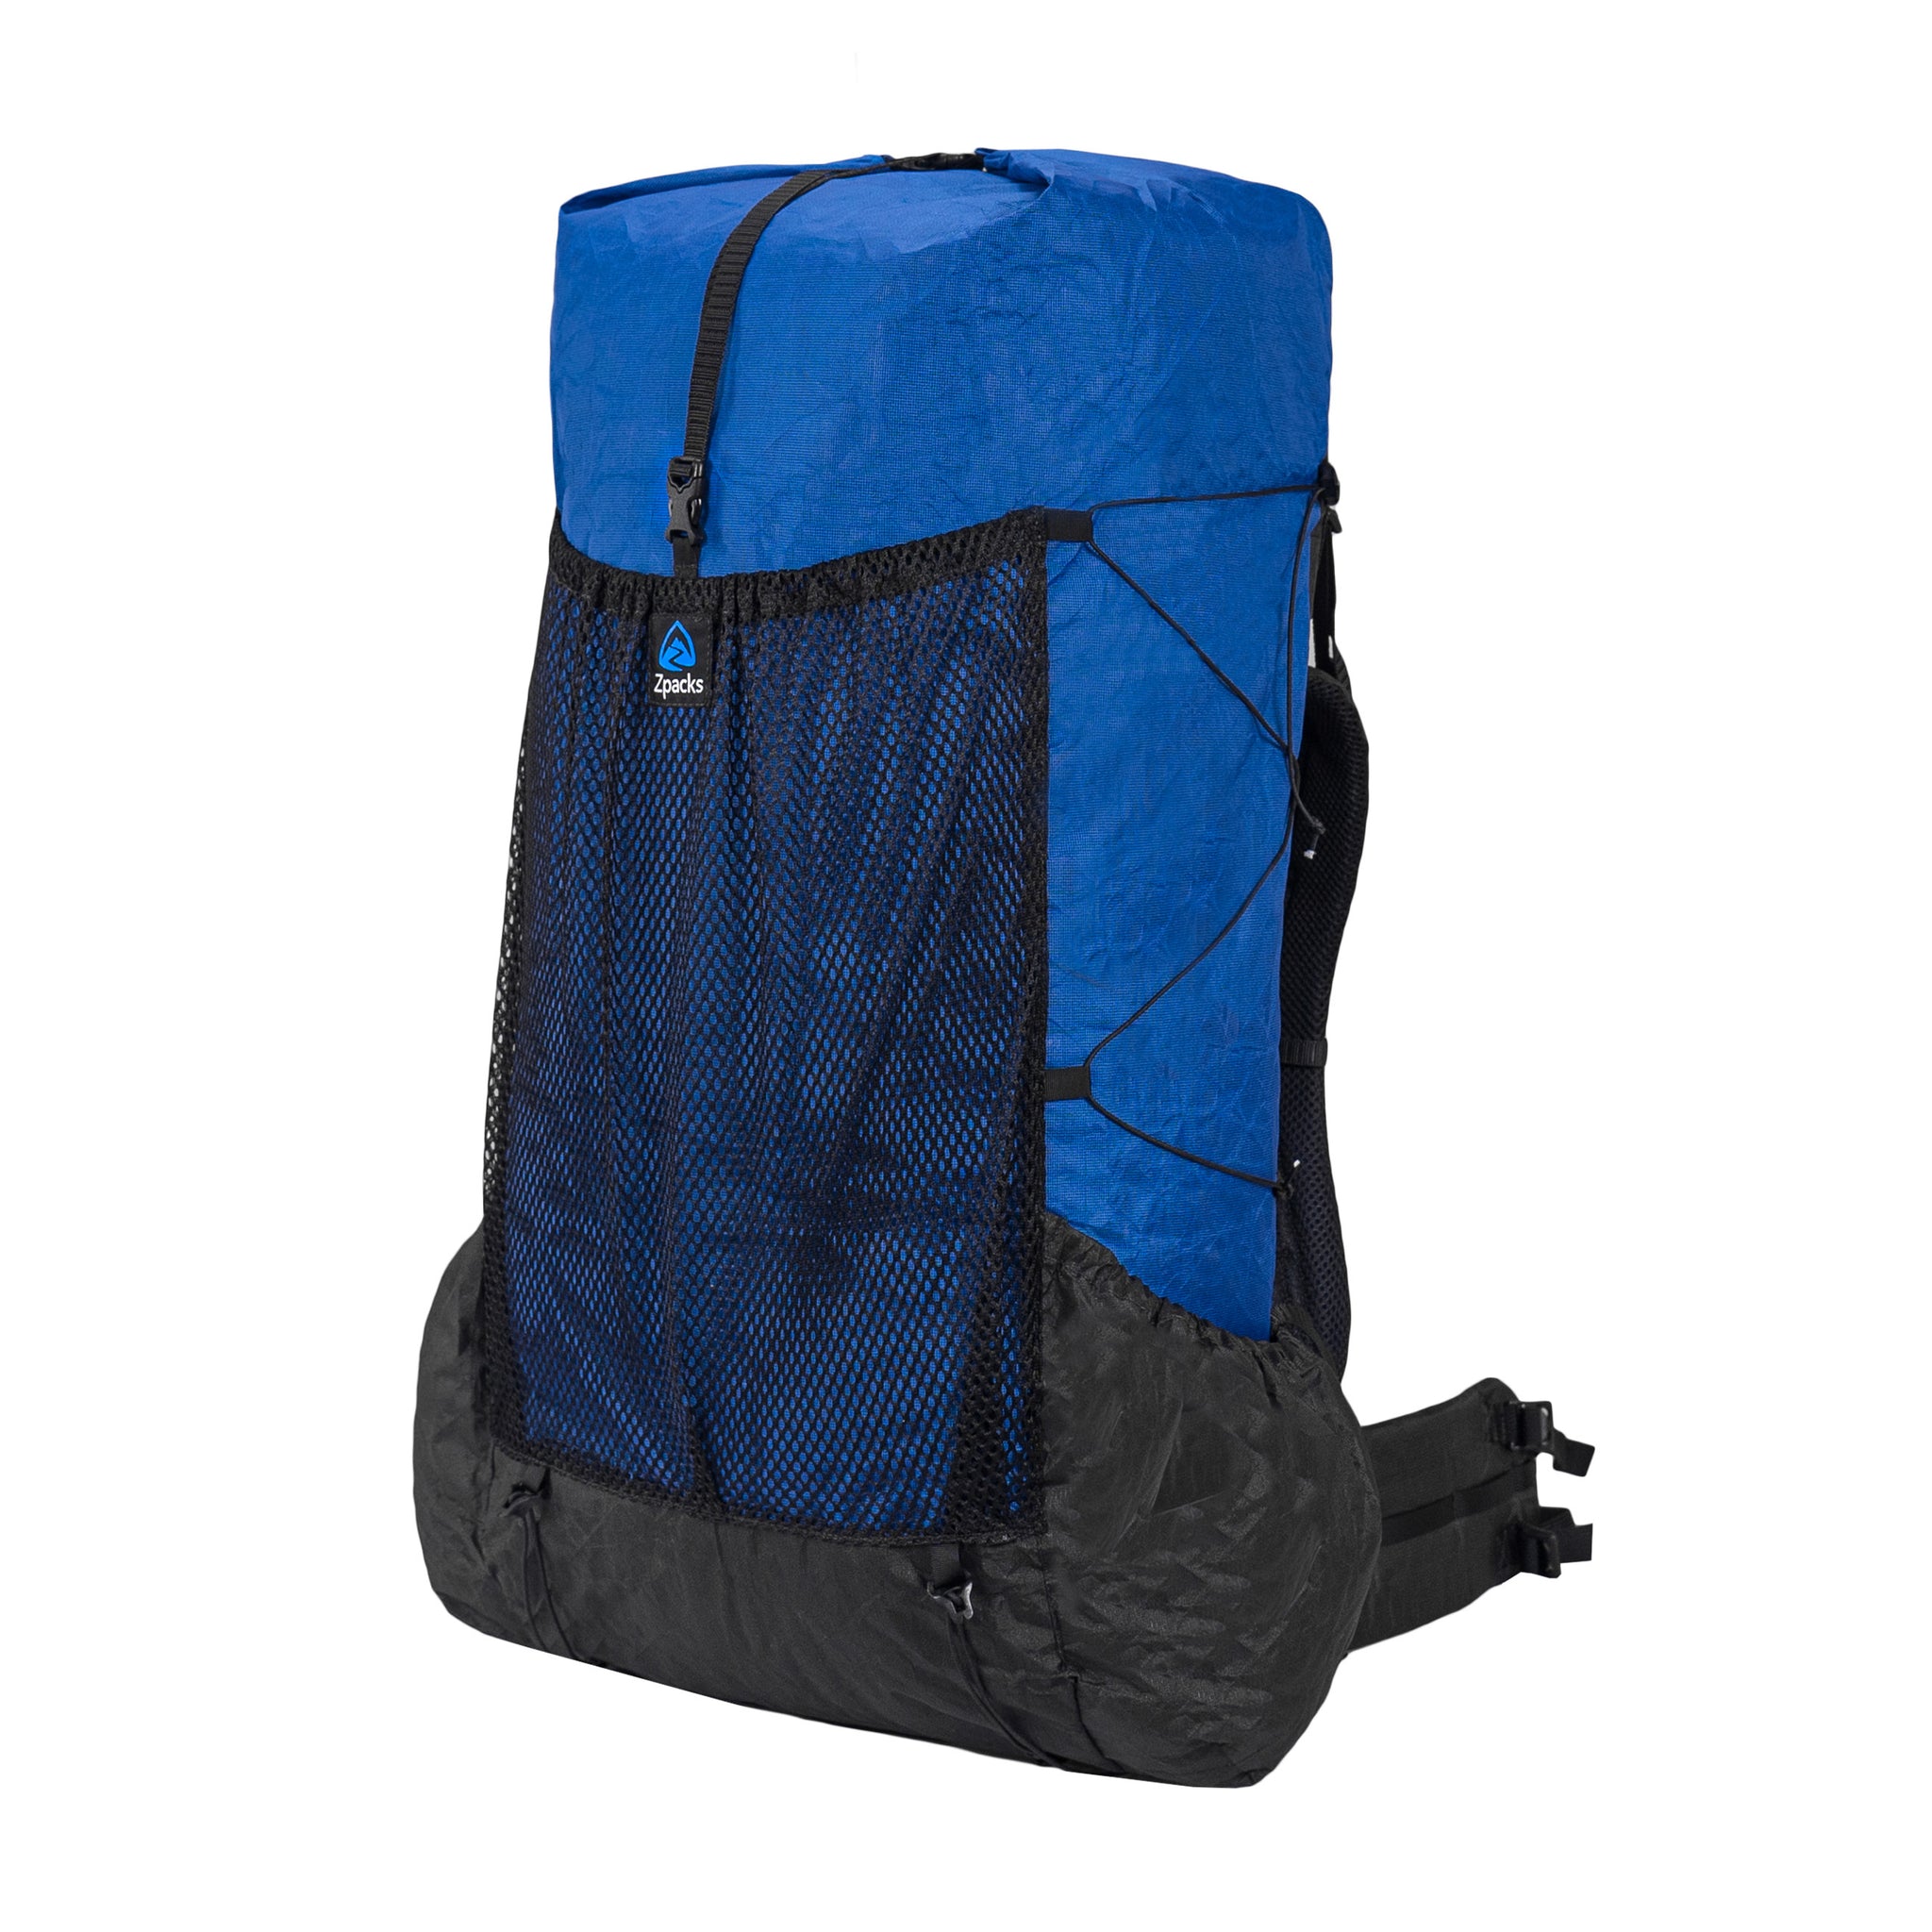 Pack of 5 Adjustable Backpack Accessories Backpack Clips Webbing Buckles  Shoulder Straps Shoulder Strap End Clips